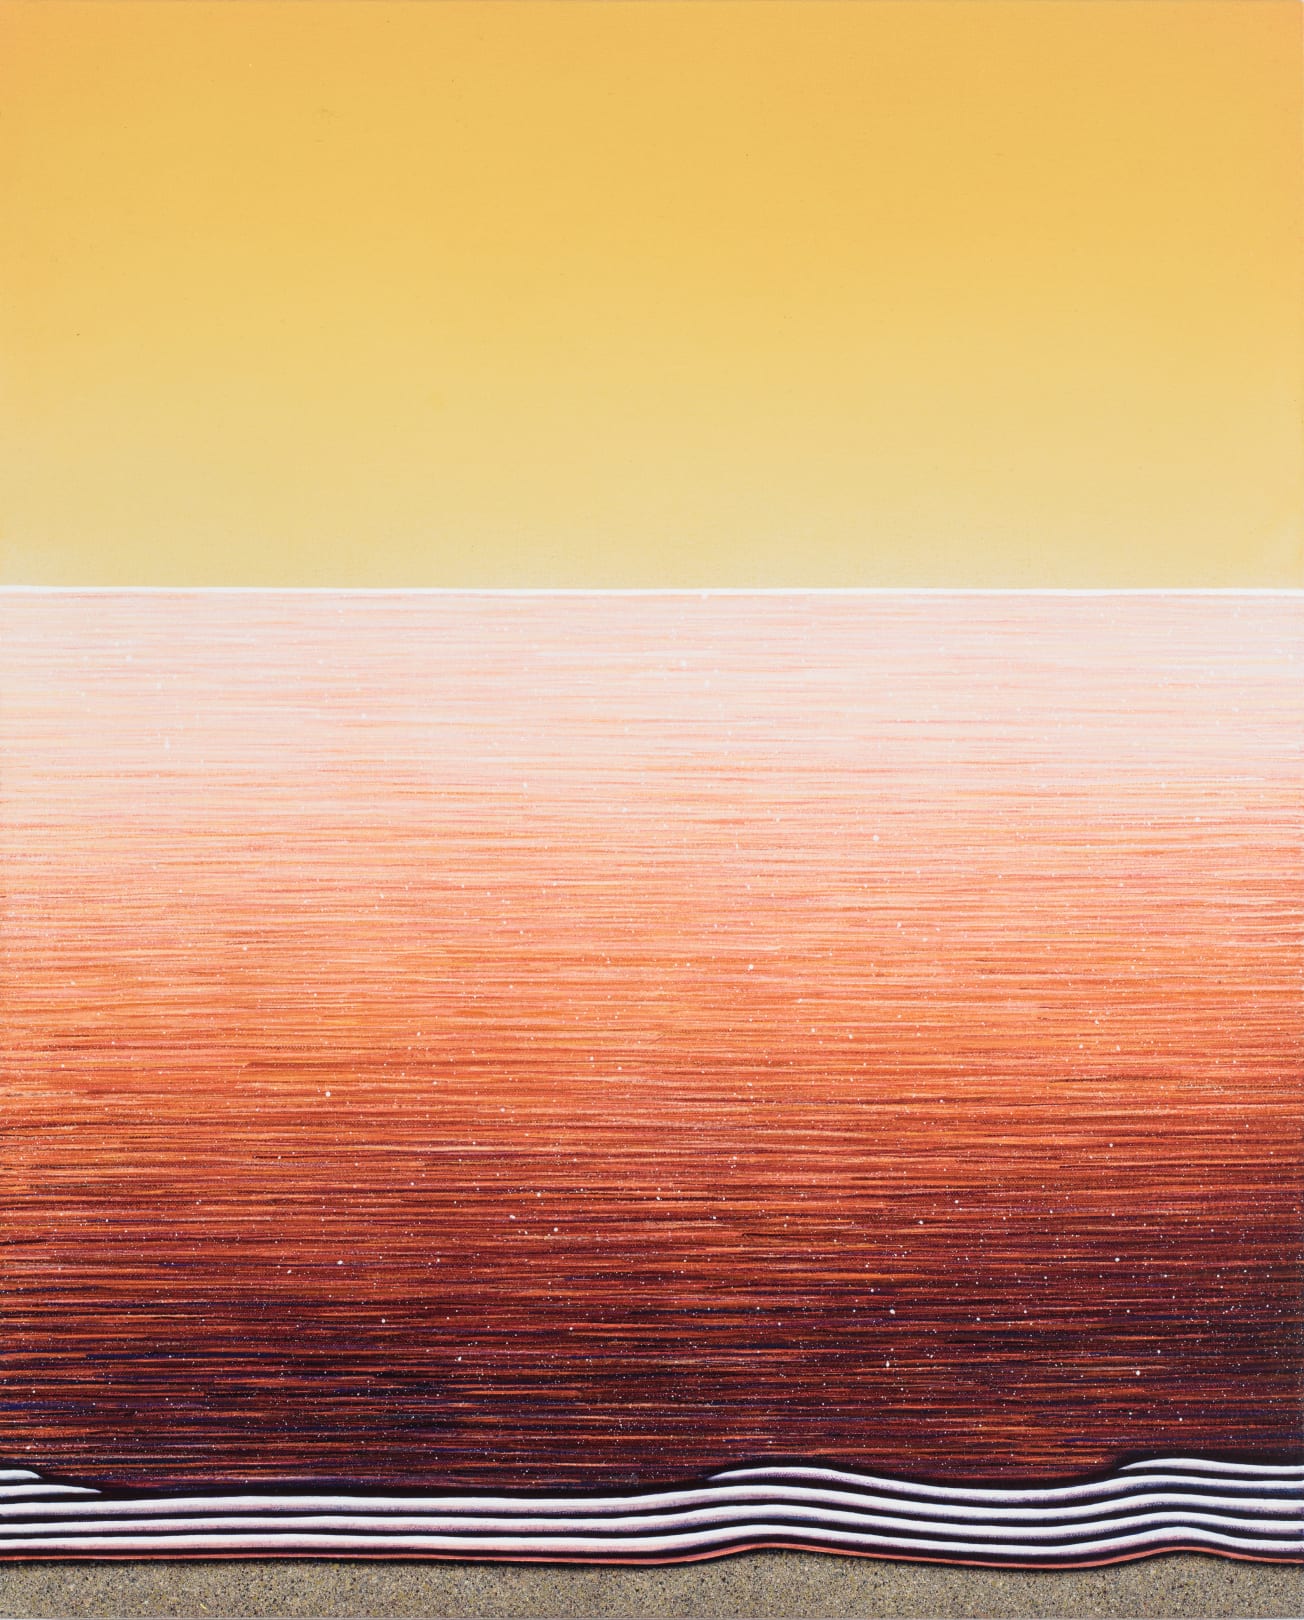 Matthew F Fisher, Orange and Yellow, 2019